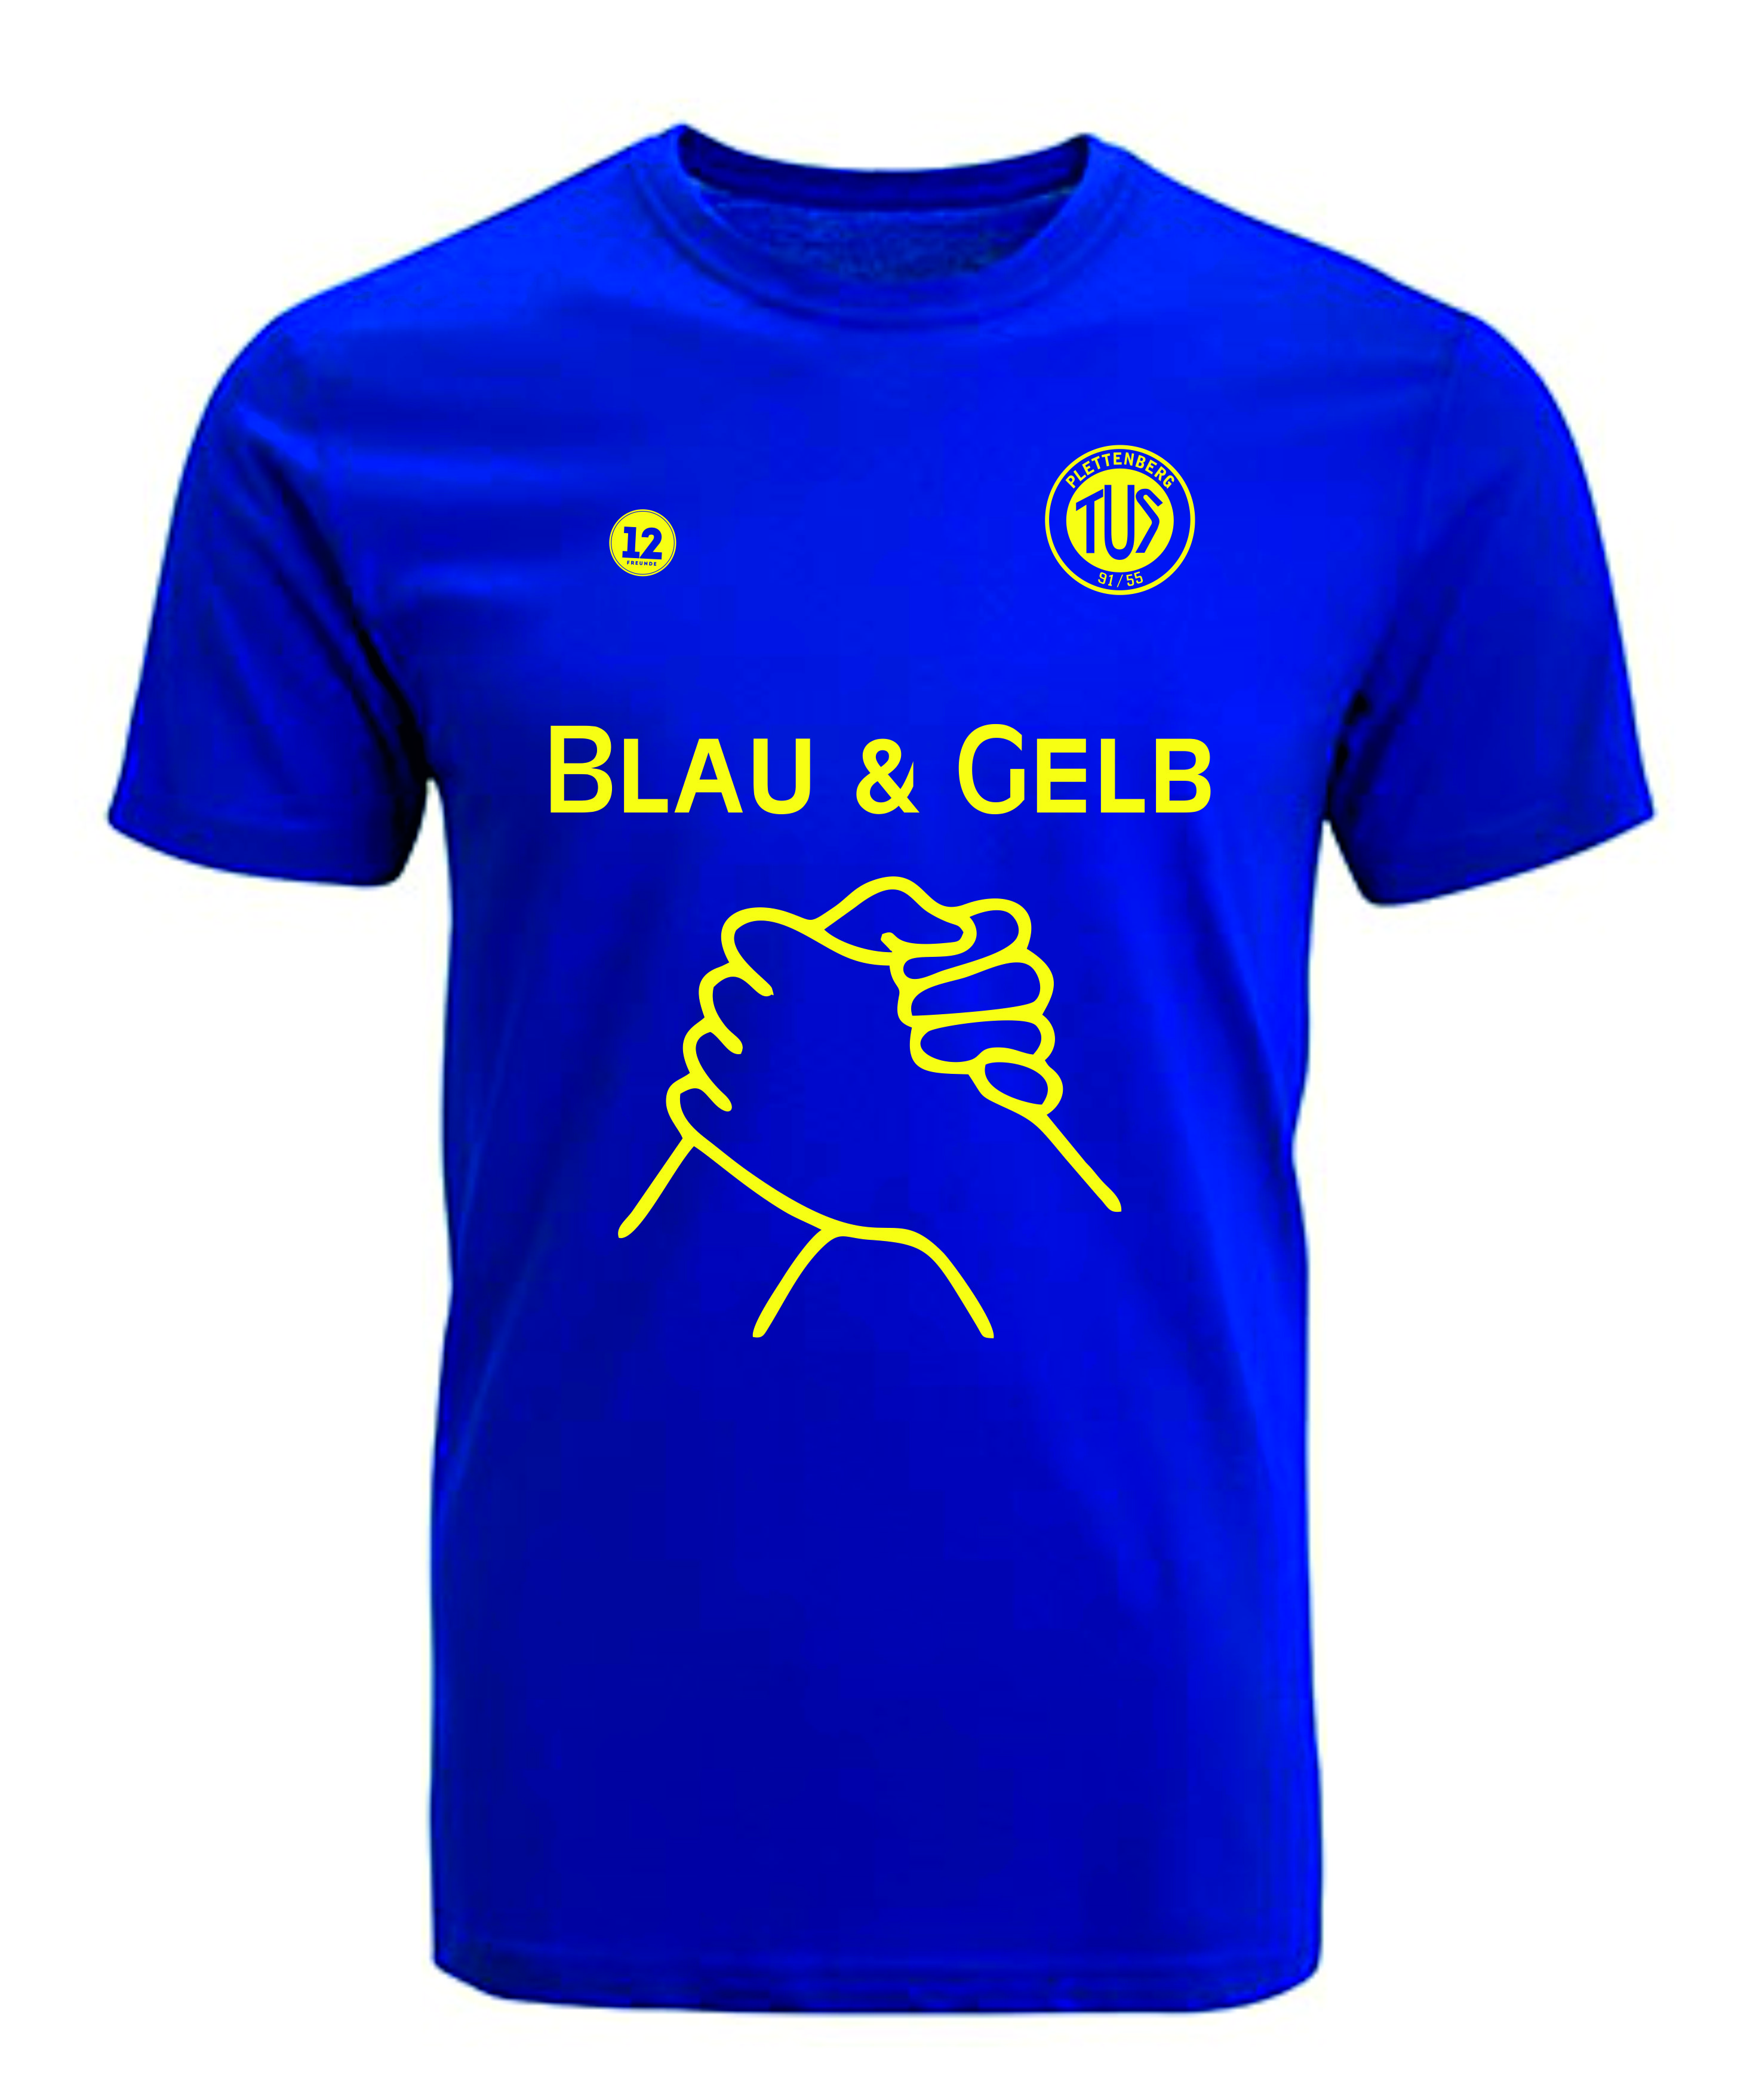 Promodoro Herren/Kinder 3099/399 T-Shirt Blau & Gelb Unterstützer TuS Plettenberg